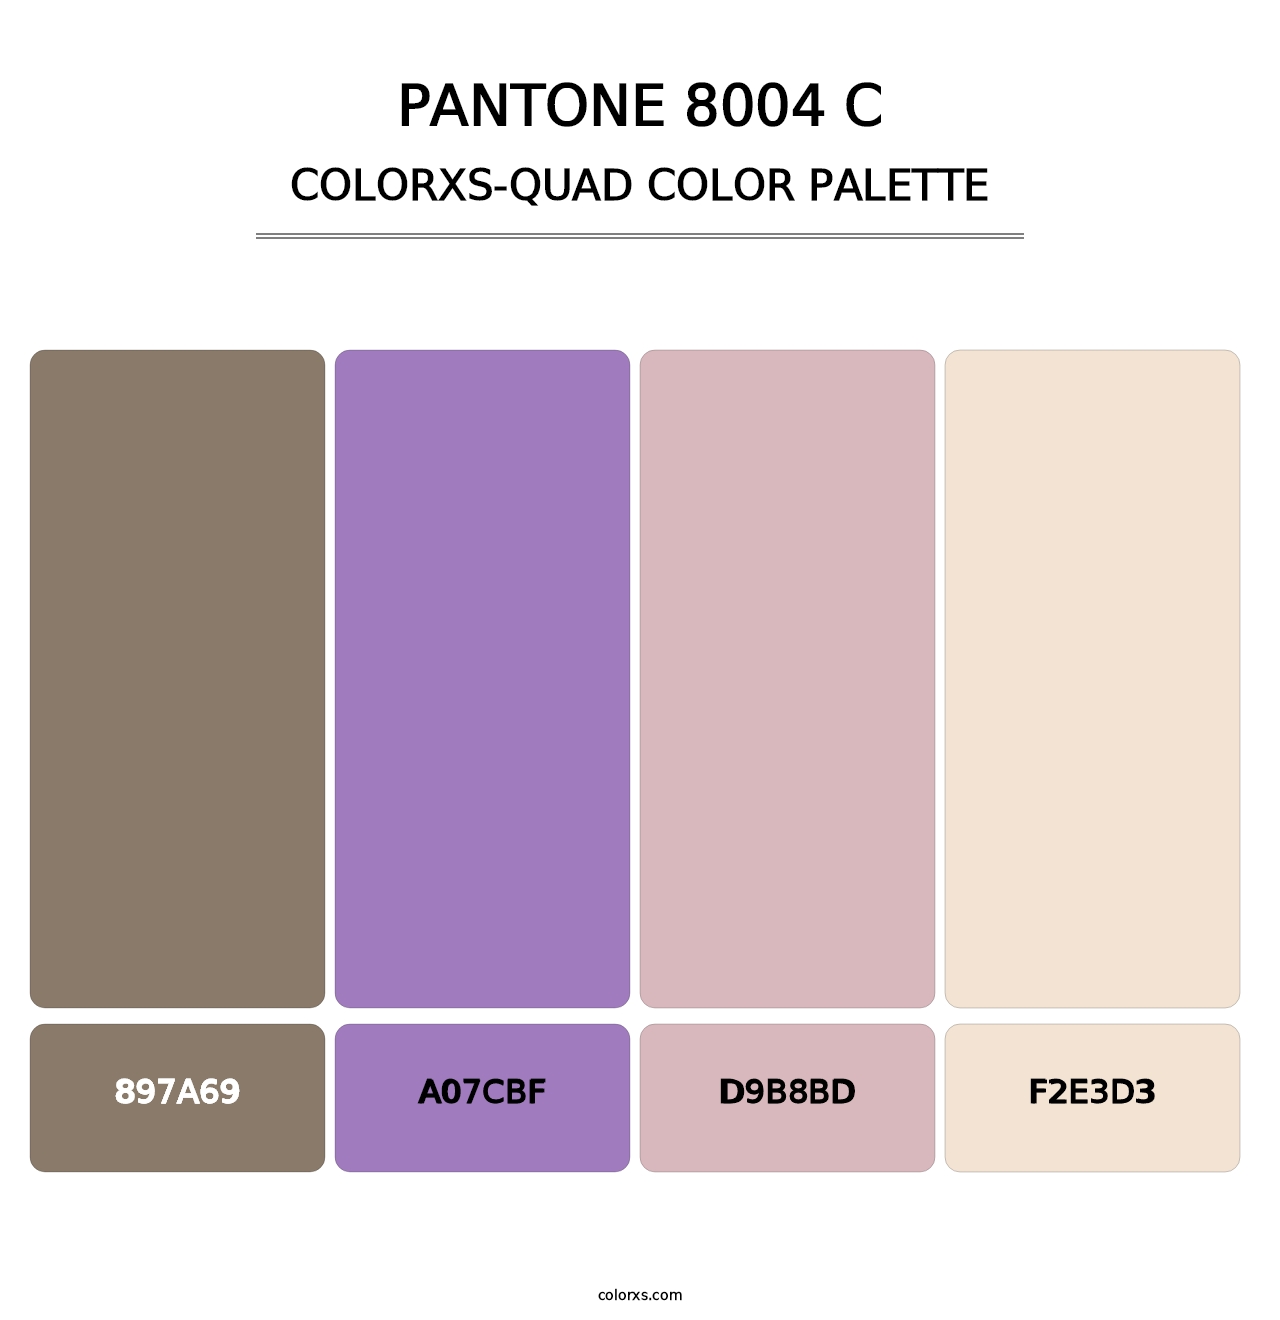 PANTONE 8004 C - Colorxs Quad Palette